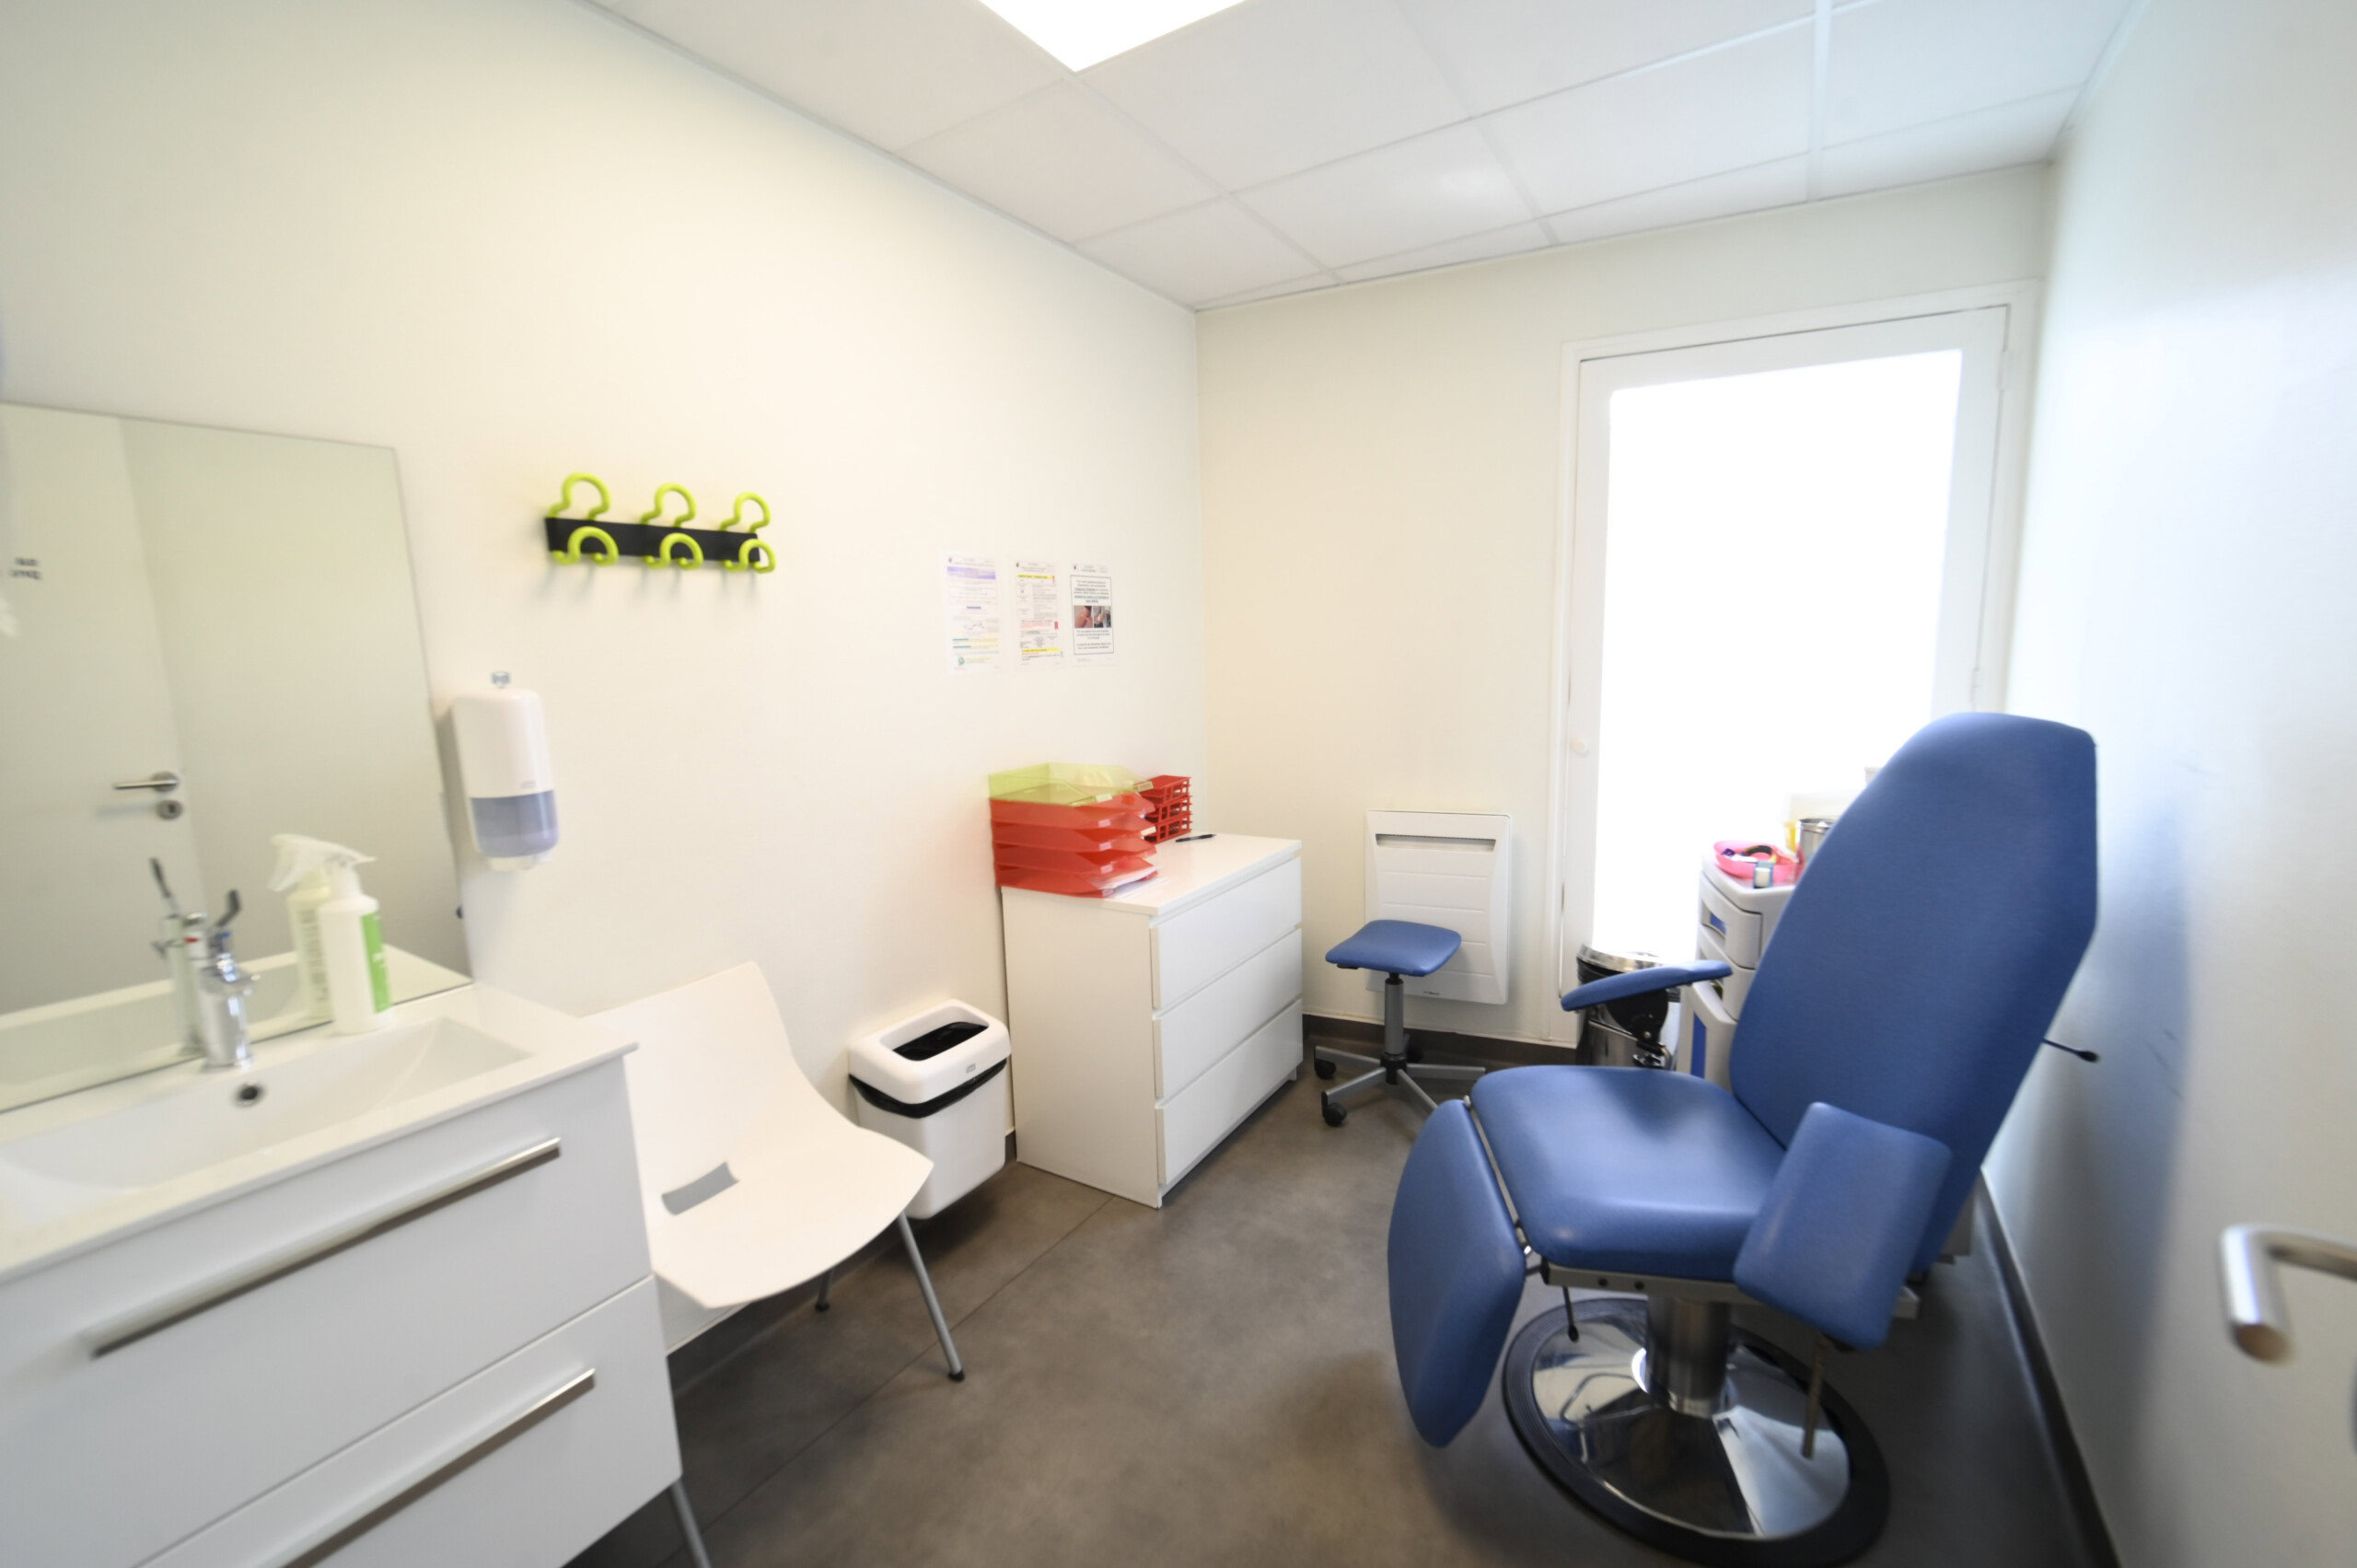 Intérieur d'une salle de consultation médicale comprenant un fauteuil d'examen, un lavabo, des armoires et du matériel médical du Laboratoire Givet Bio Ard'Aisne.